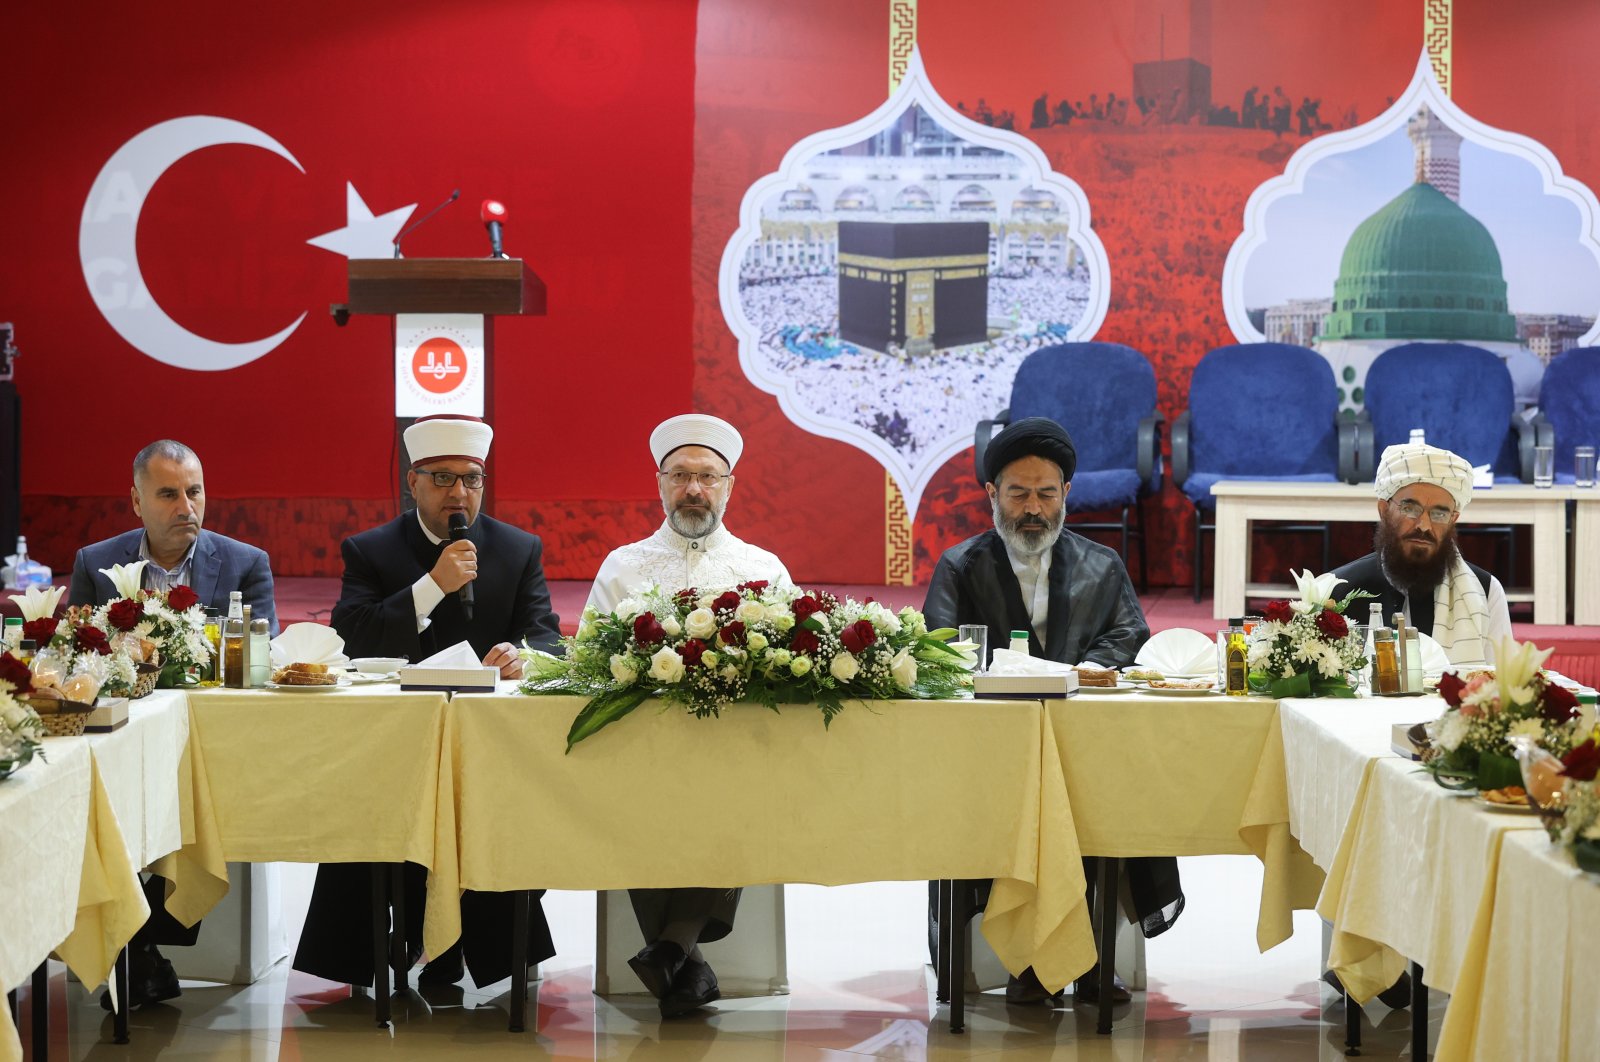 Lebih dari 92.000 warga Turki menunaikan ibadah haji: Kementerian